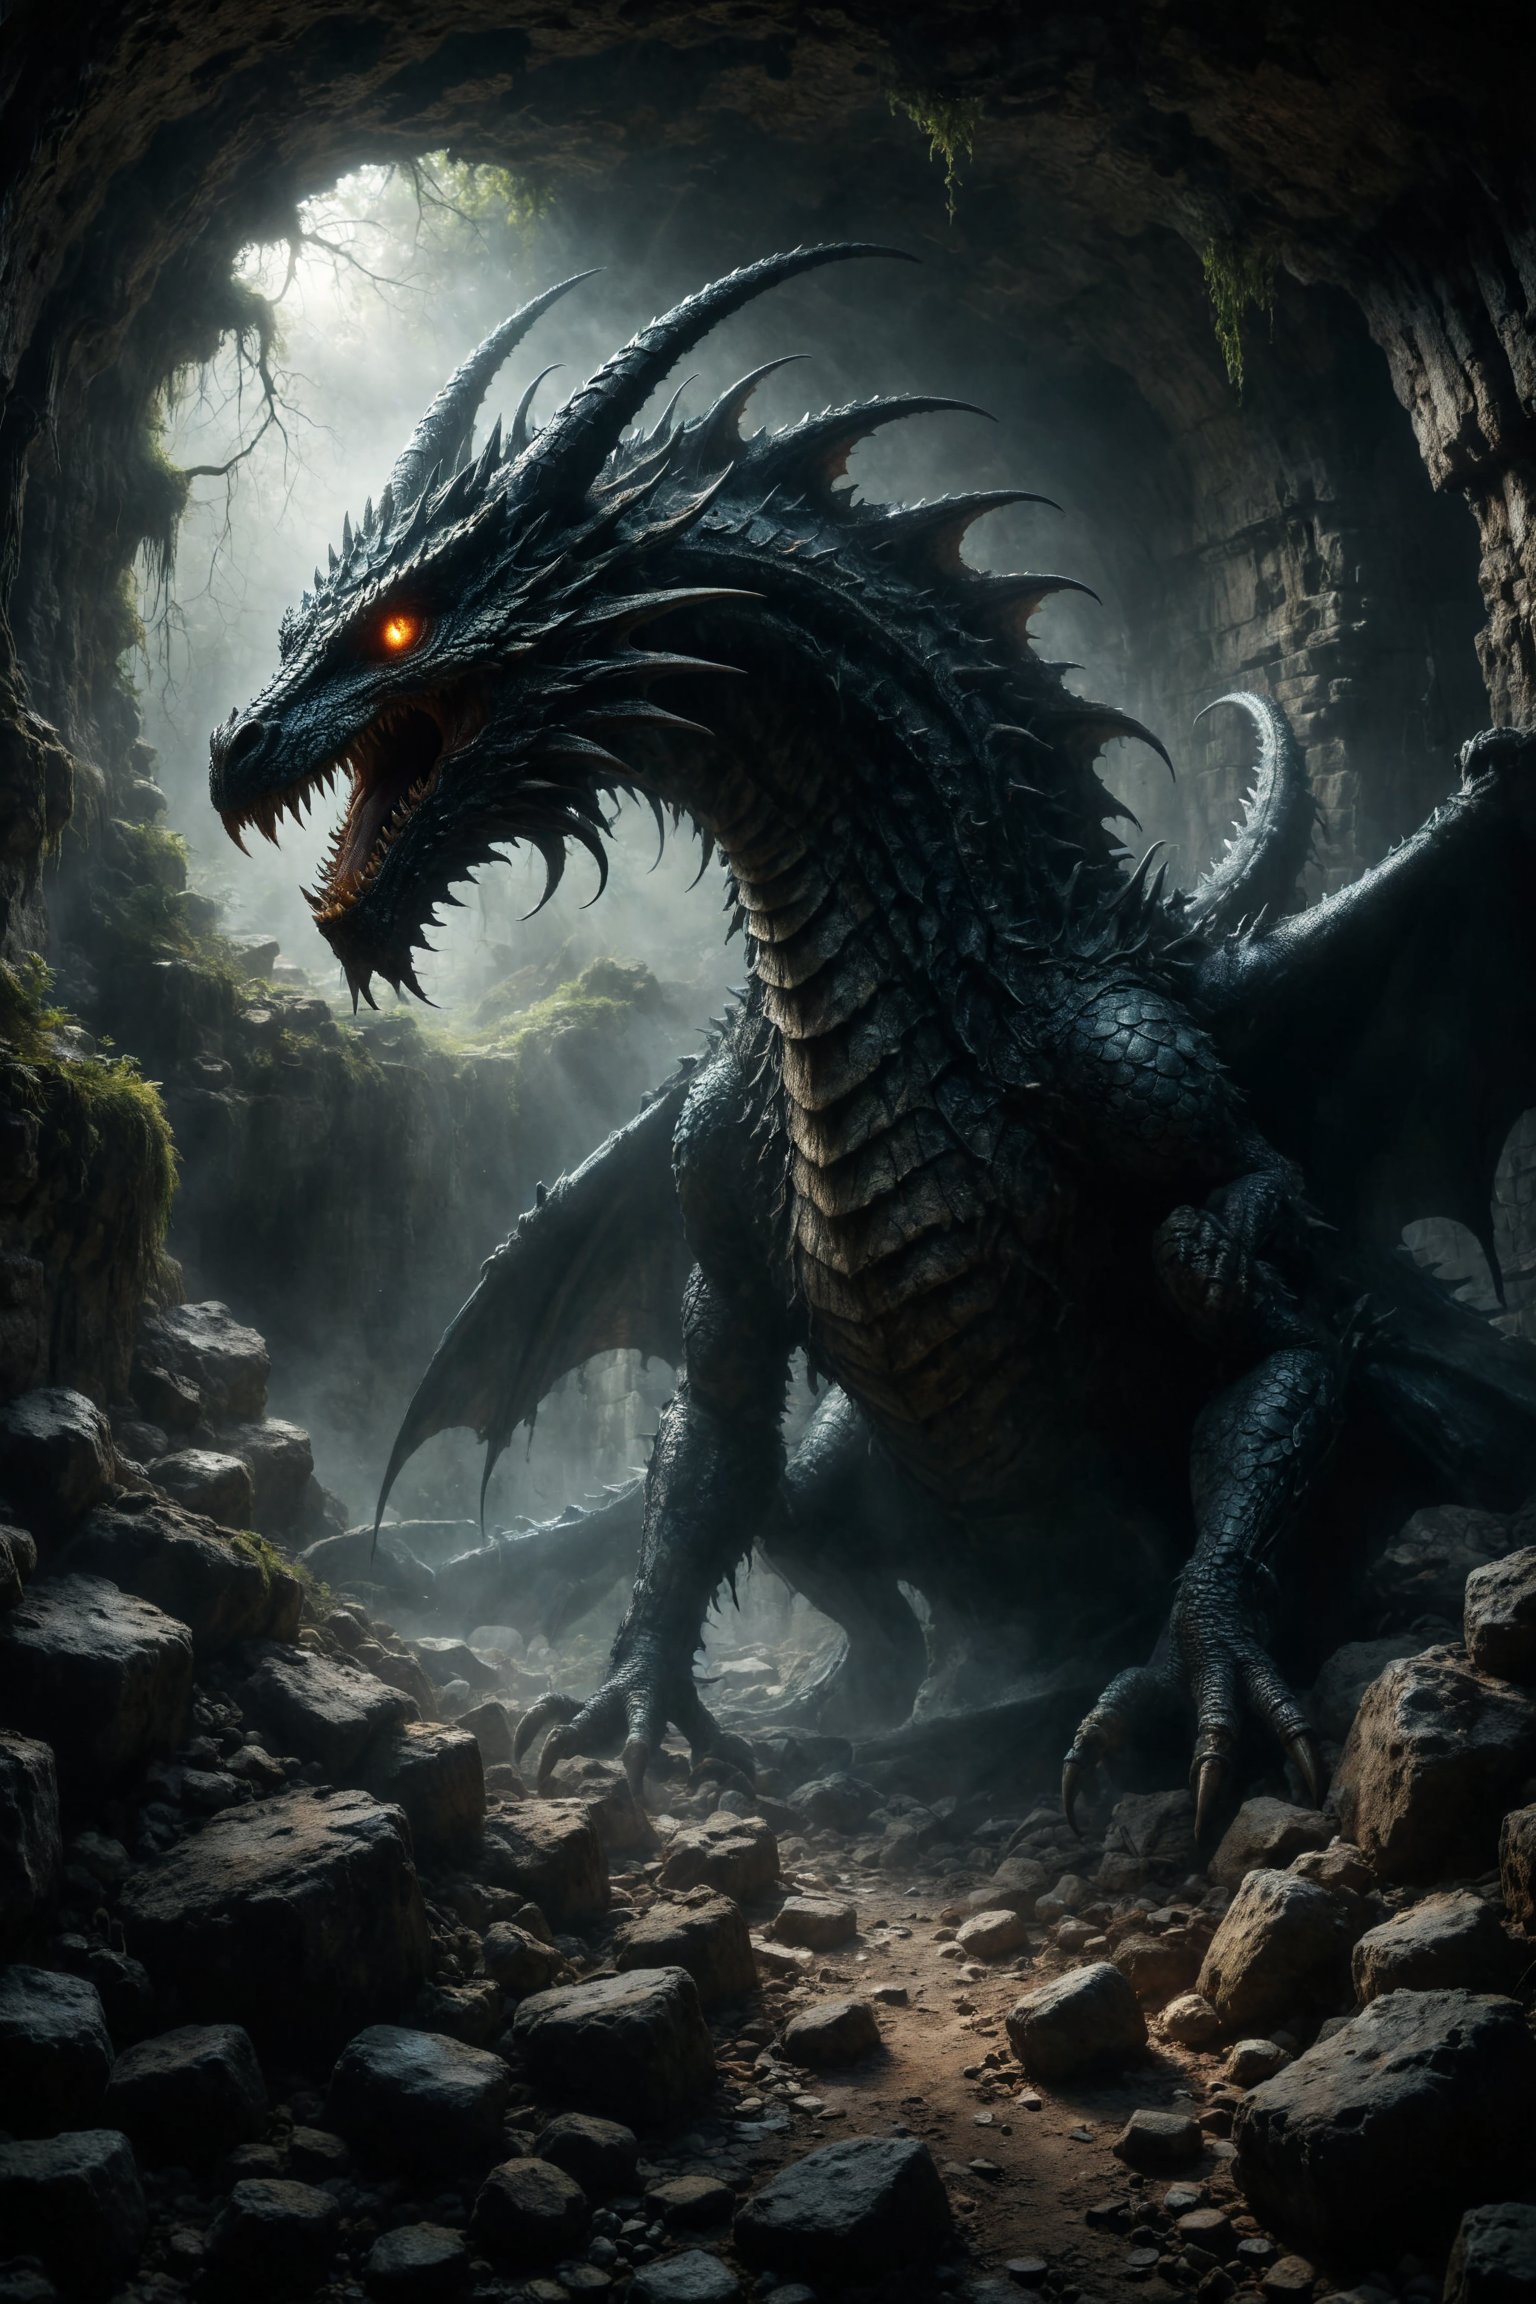 mitica y misteriosa escena gotica de Un dragón de escamas oscuras y ojos resplandecientes, custodiando un tesoro en una cueva llena de estalactitas afiladas.